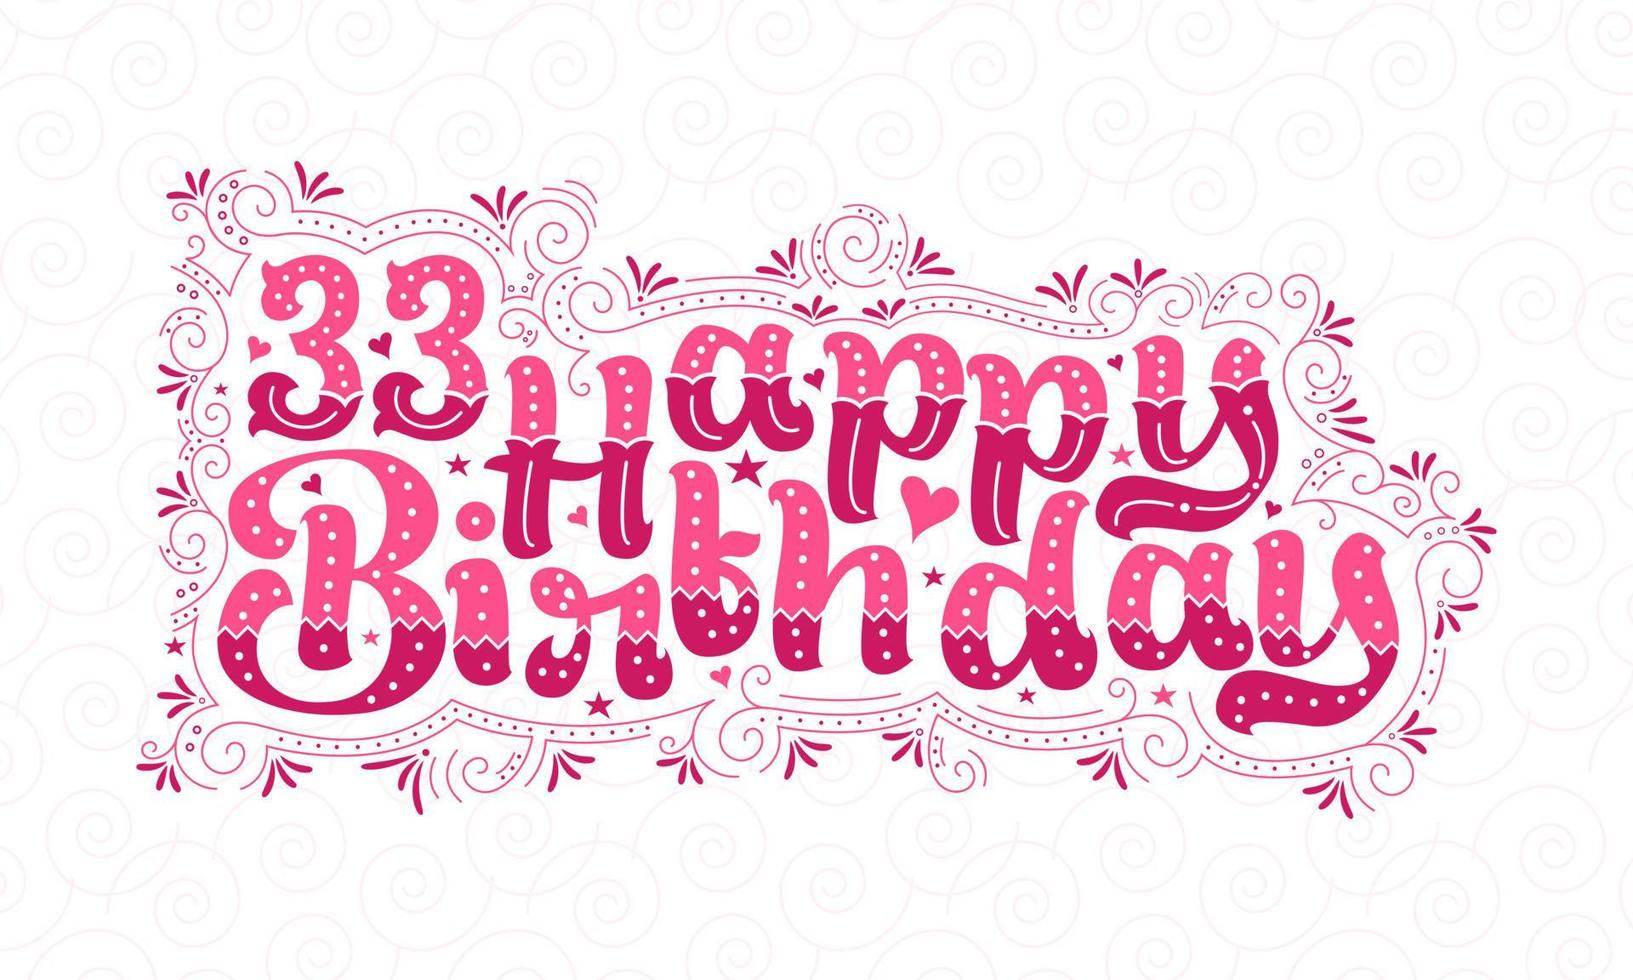 33e gelukkige verjaardag belettering, 33 jaar verjaardag mooi typografieontwerp met roze stippen, lijnen en bladeren. vector